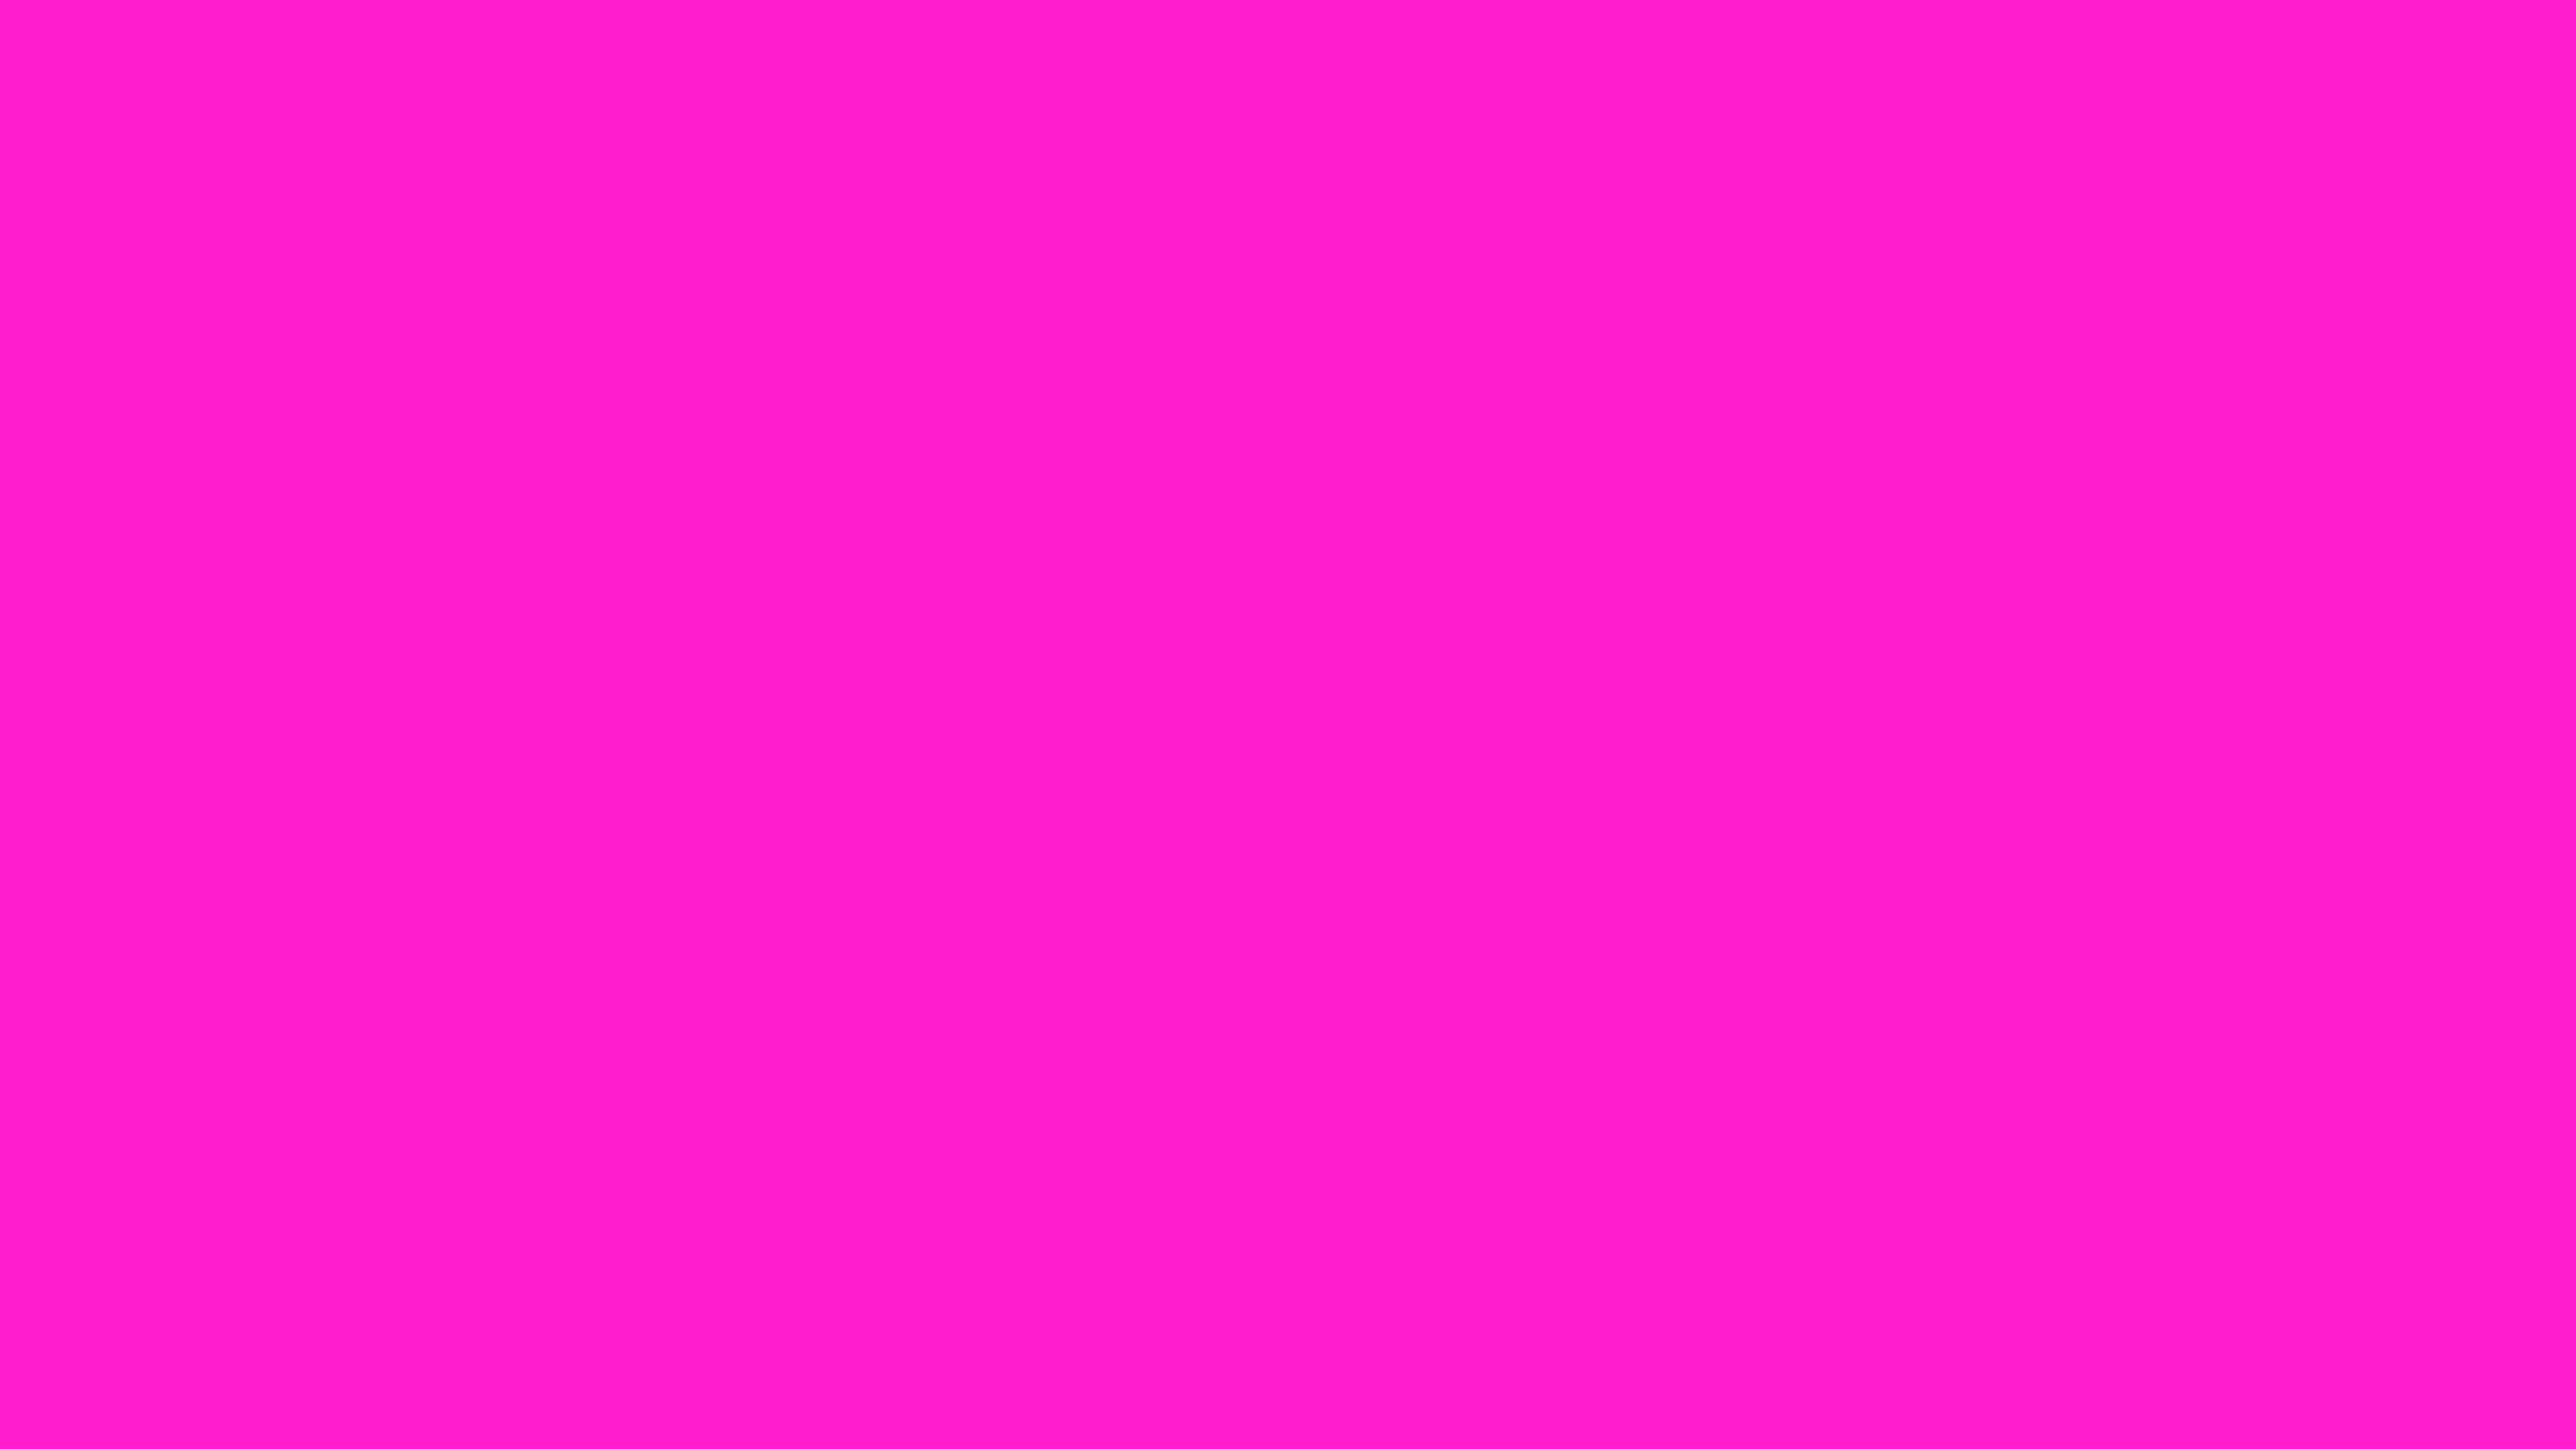 Màu hồng nóng: Hãy cùng chiêm ngưỡng hình ảnh với màu hồng nóng, tạo nên sự cuốn hút và nổi bật. Màu sắc này là biểu tượng của sự nữ tính, tươi mới và đầy sức sống. Bạn sẽ được đắm mình trong không gian đầy sức sống ngập tràn màu hồng nóng.